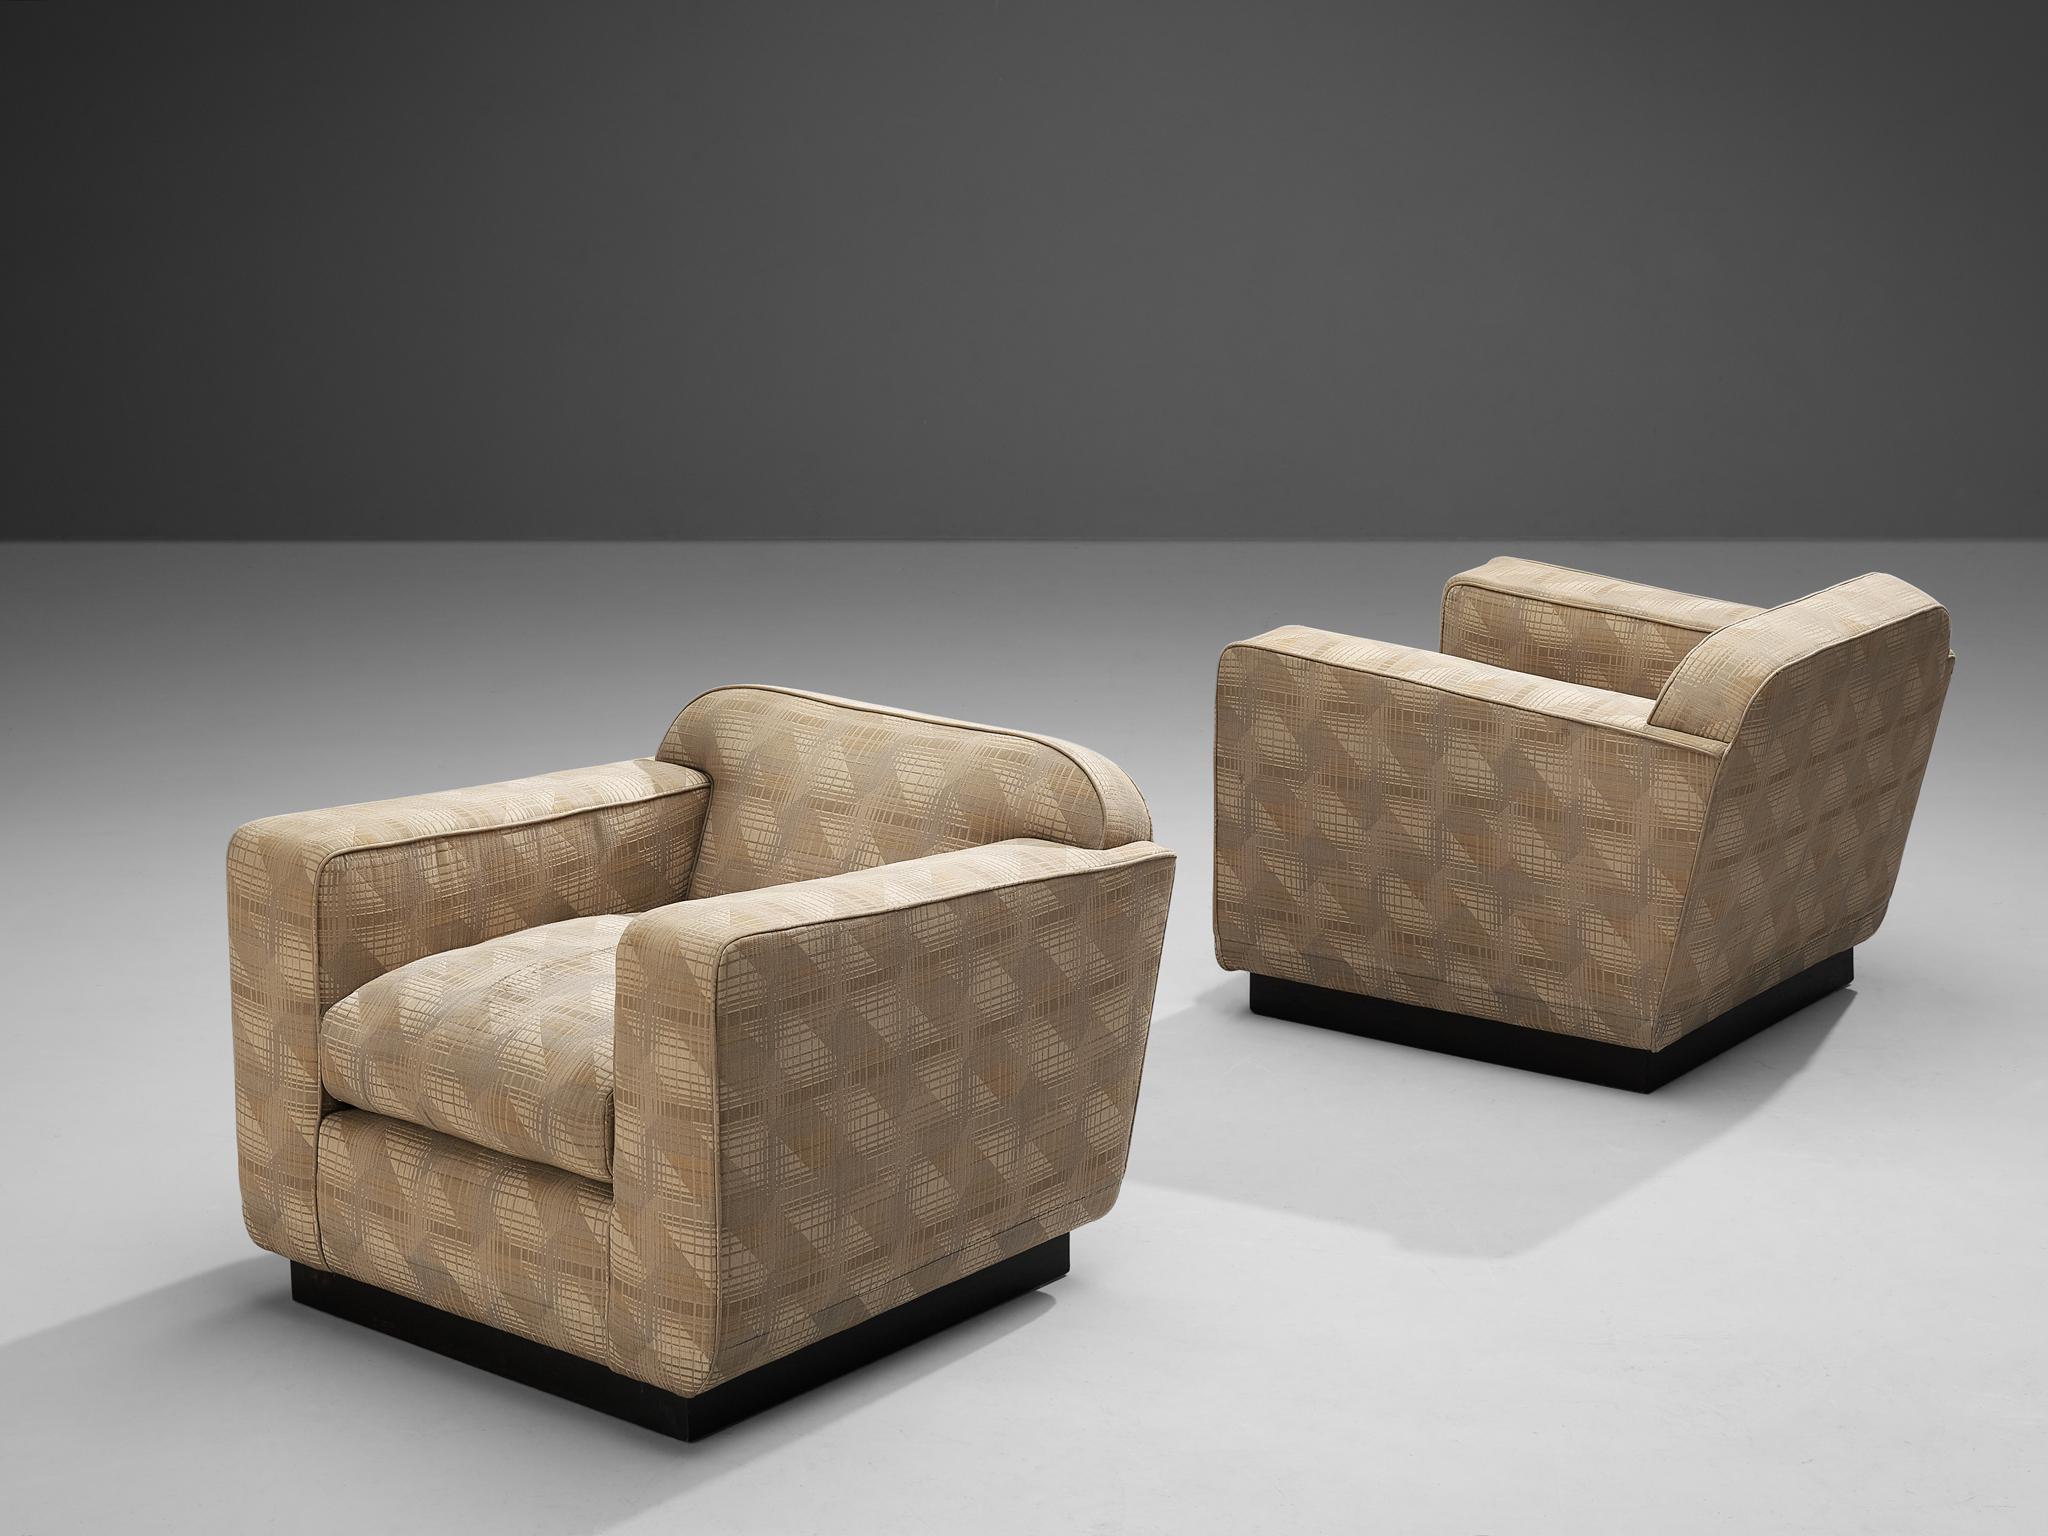 Paar Clubsessel, Stoff, lackiertes Holz, Italien, 1940er Jahre. 

Atemberaubendes Paar Art-Déco-Sessel mit geometrisch gemusterter Polsterung. Außergewöhnliche Stühle, die durch die Kombination von abstraktem Muster und Konstruktion auf die späte